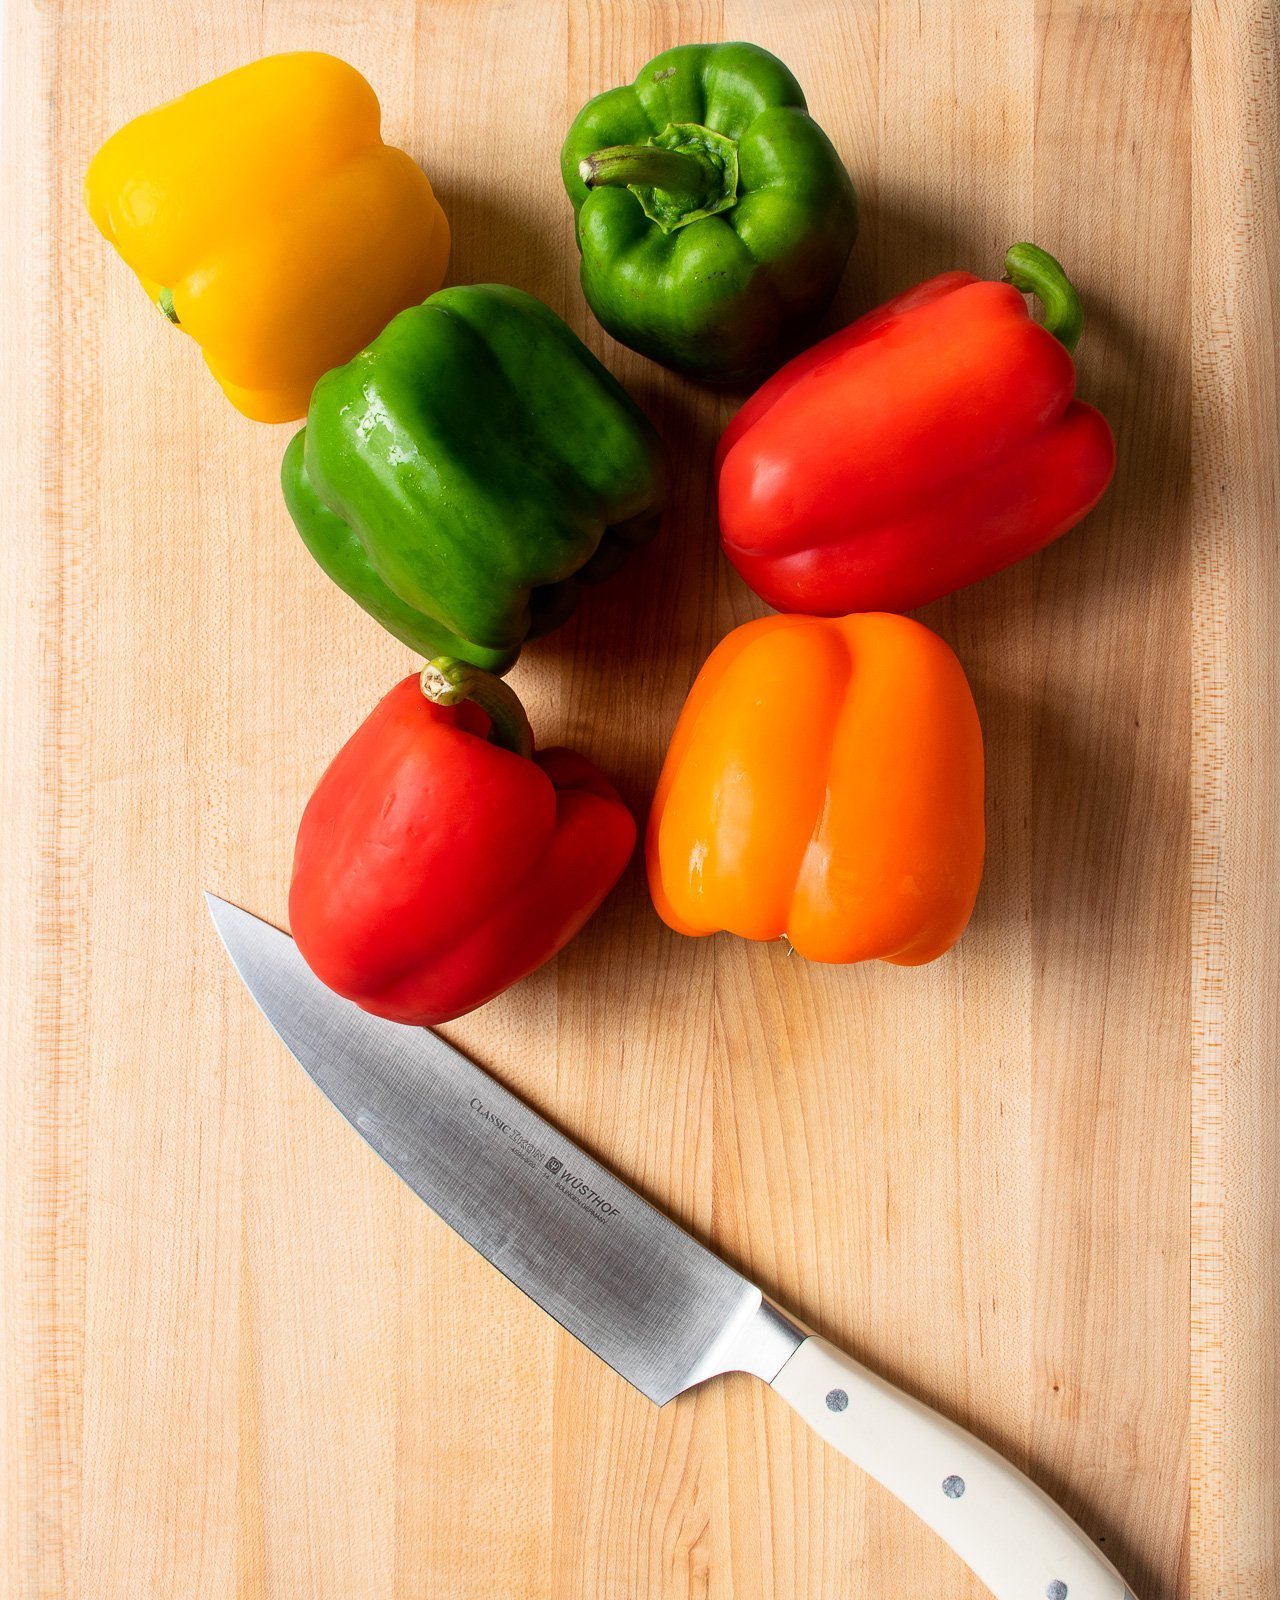 Bell pepper cutter